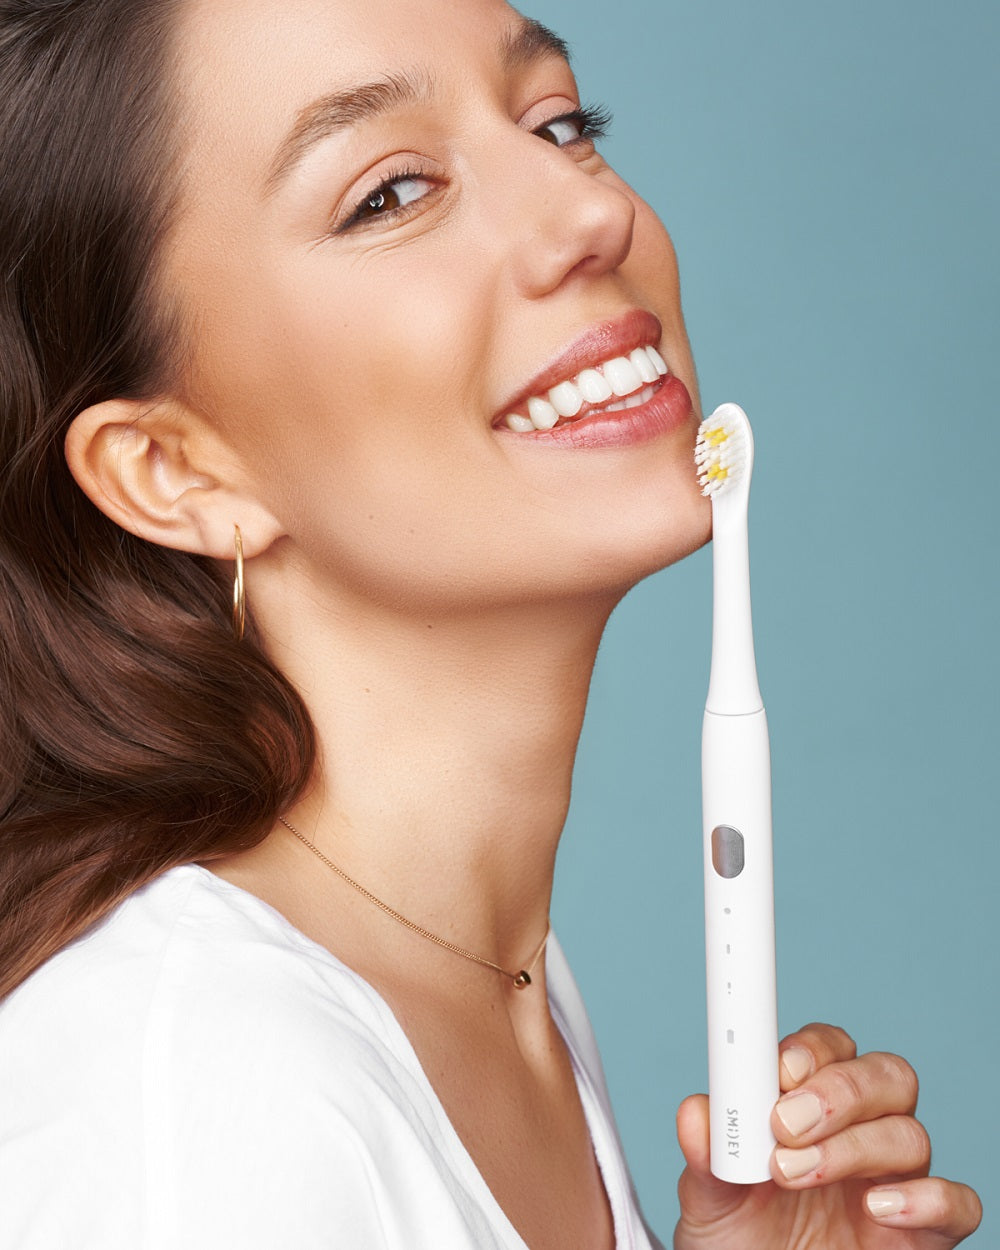 Електрична зубна щітка Smiley Light біла купити в офіційному магазині Smiley